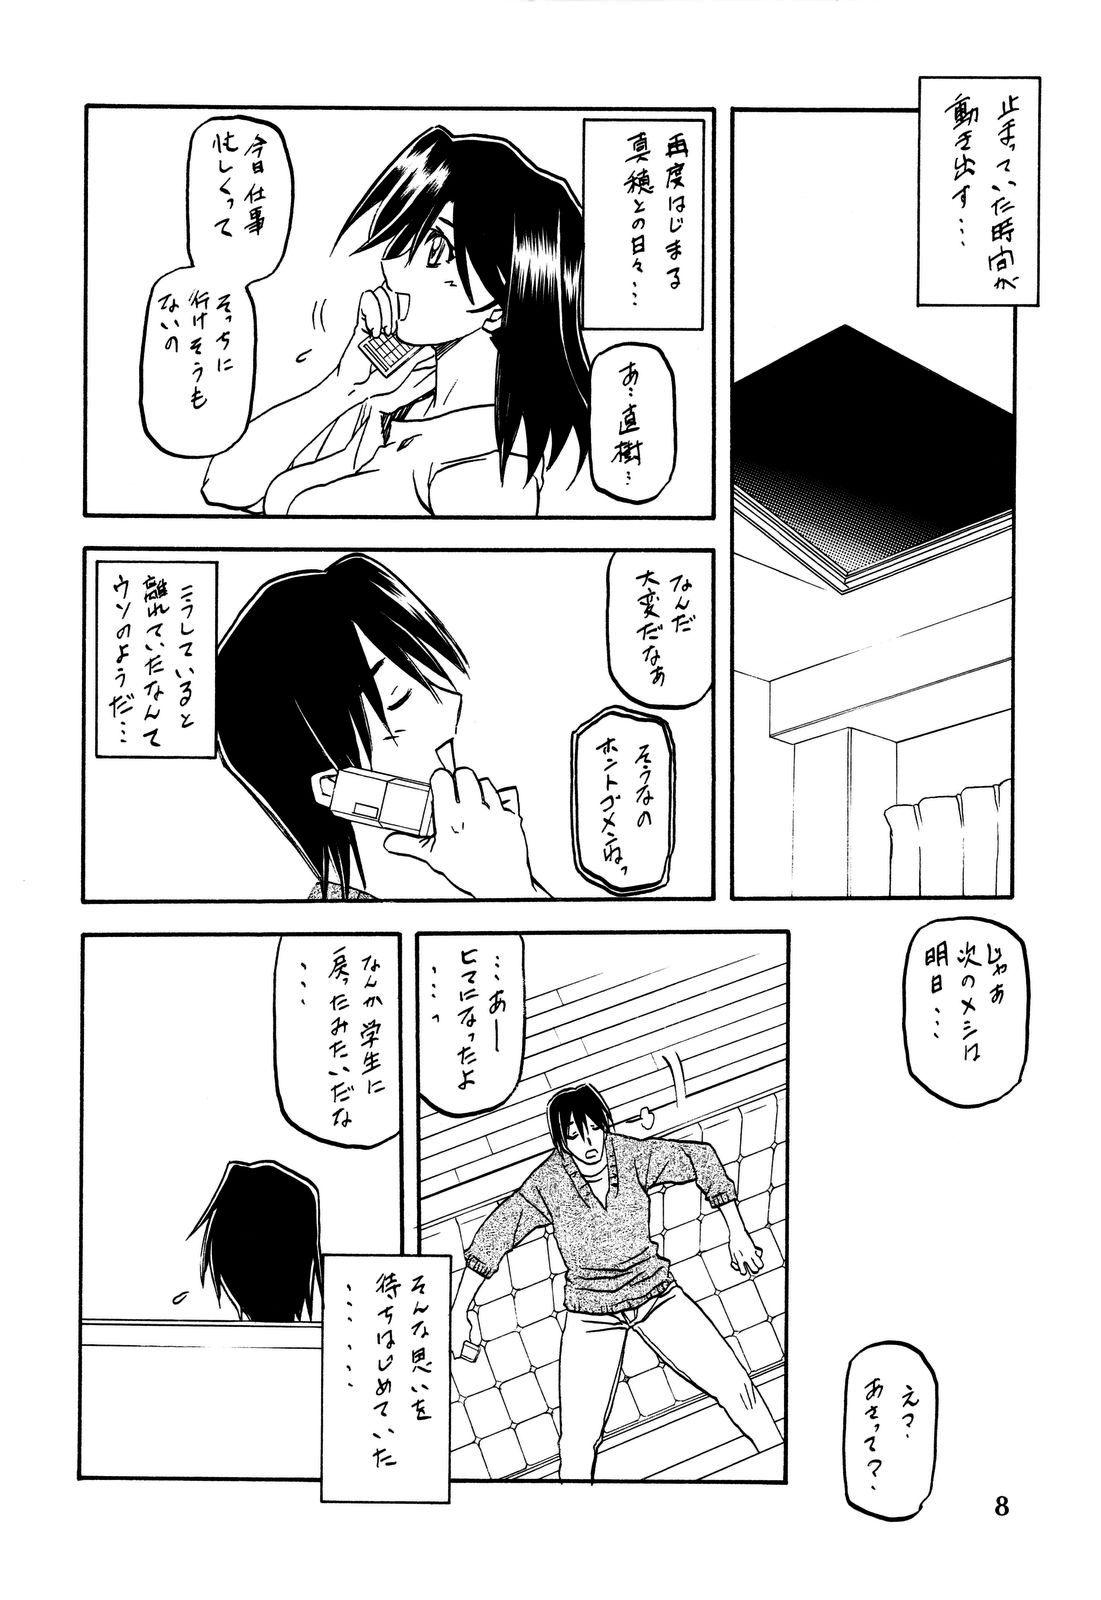 Fisting Akebi no Hana - Akebi no mi Nice - Page 8